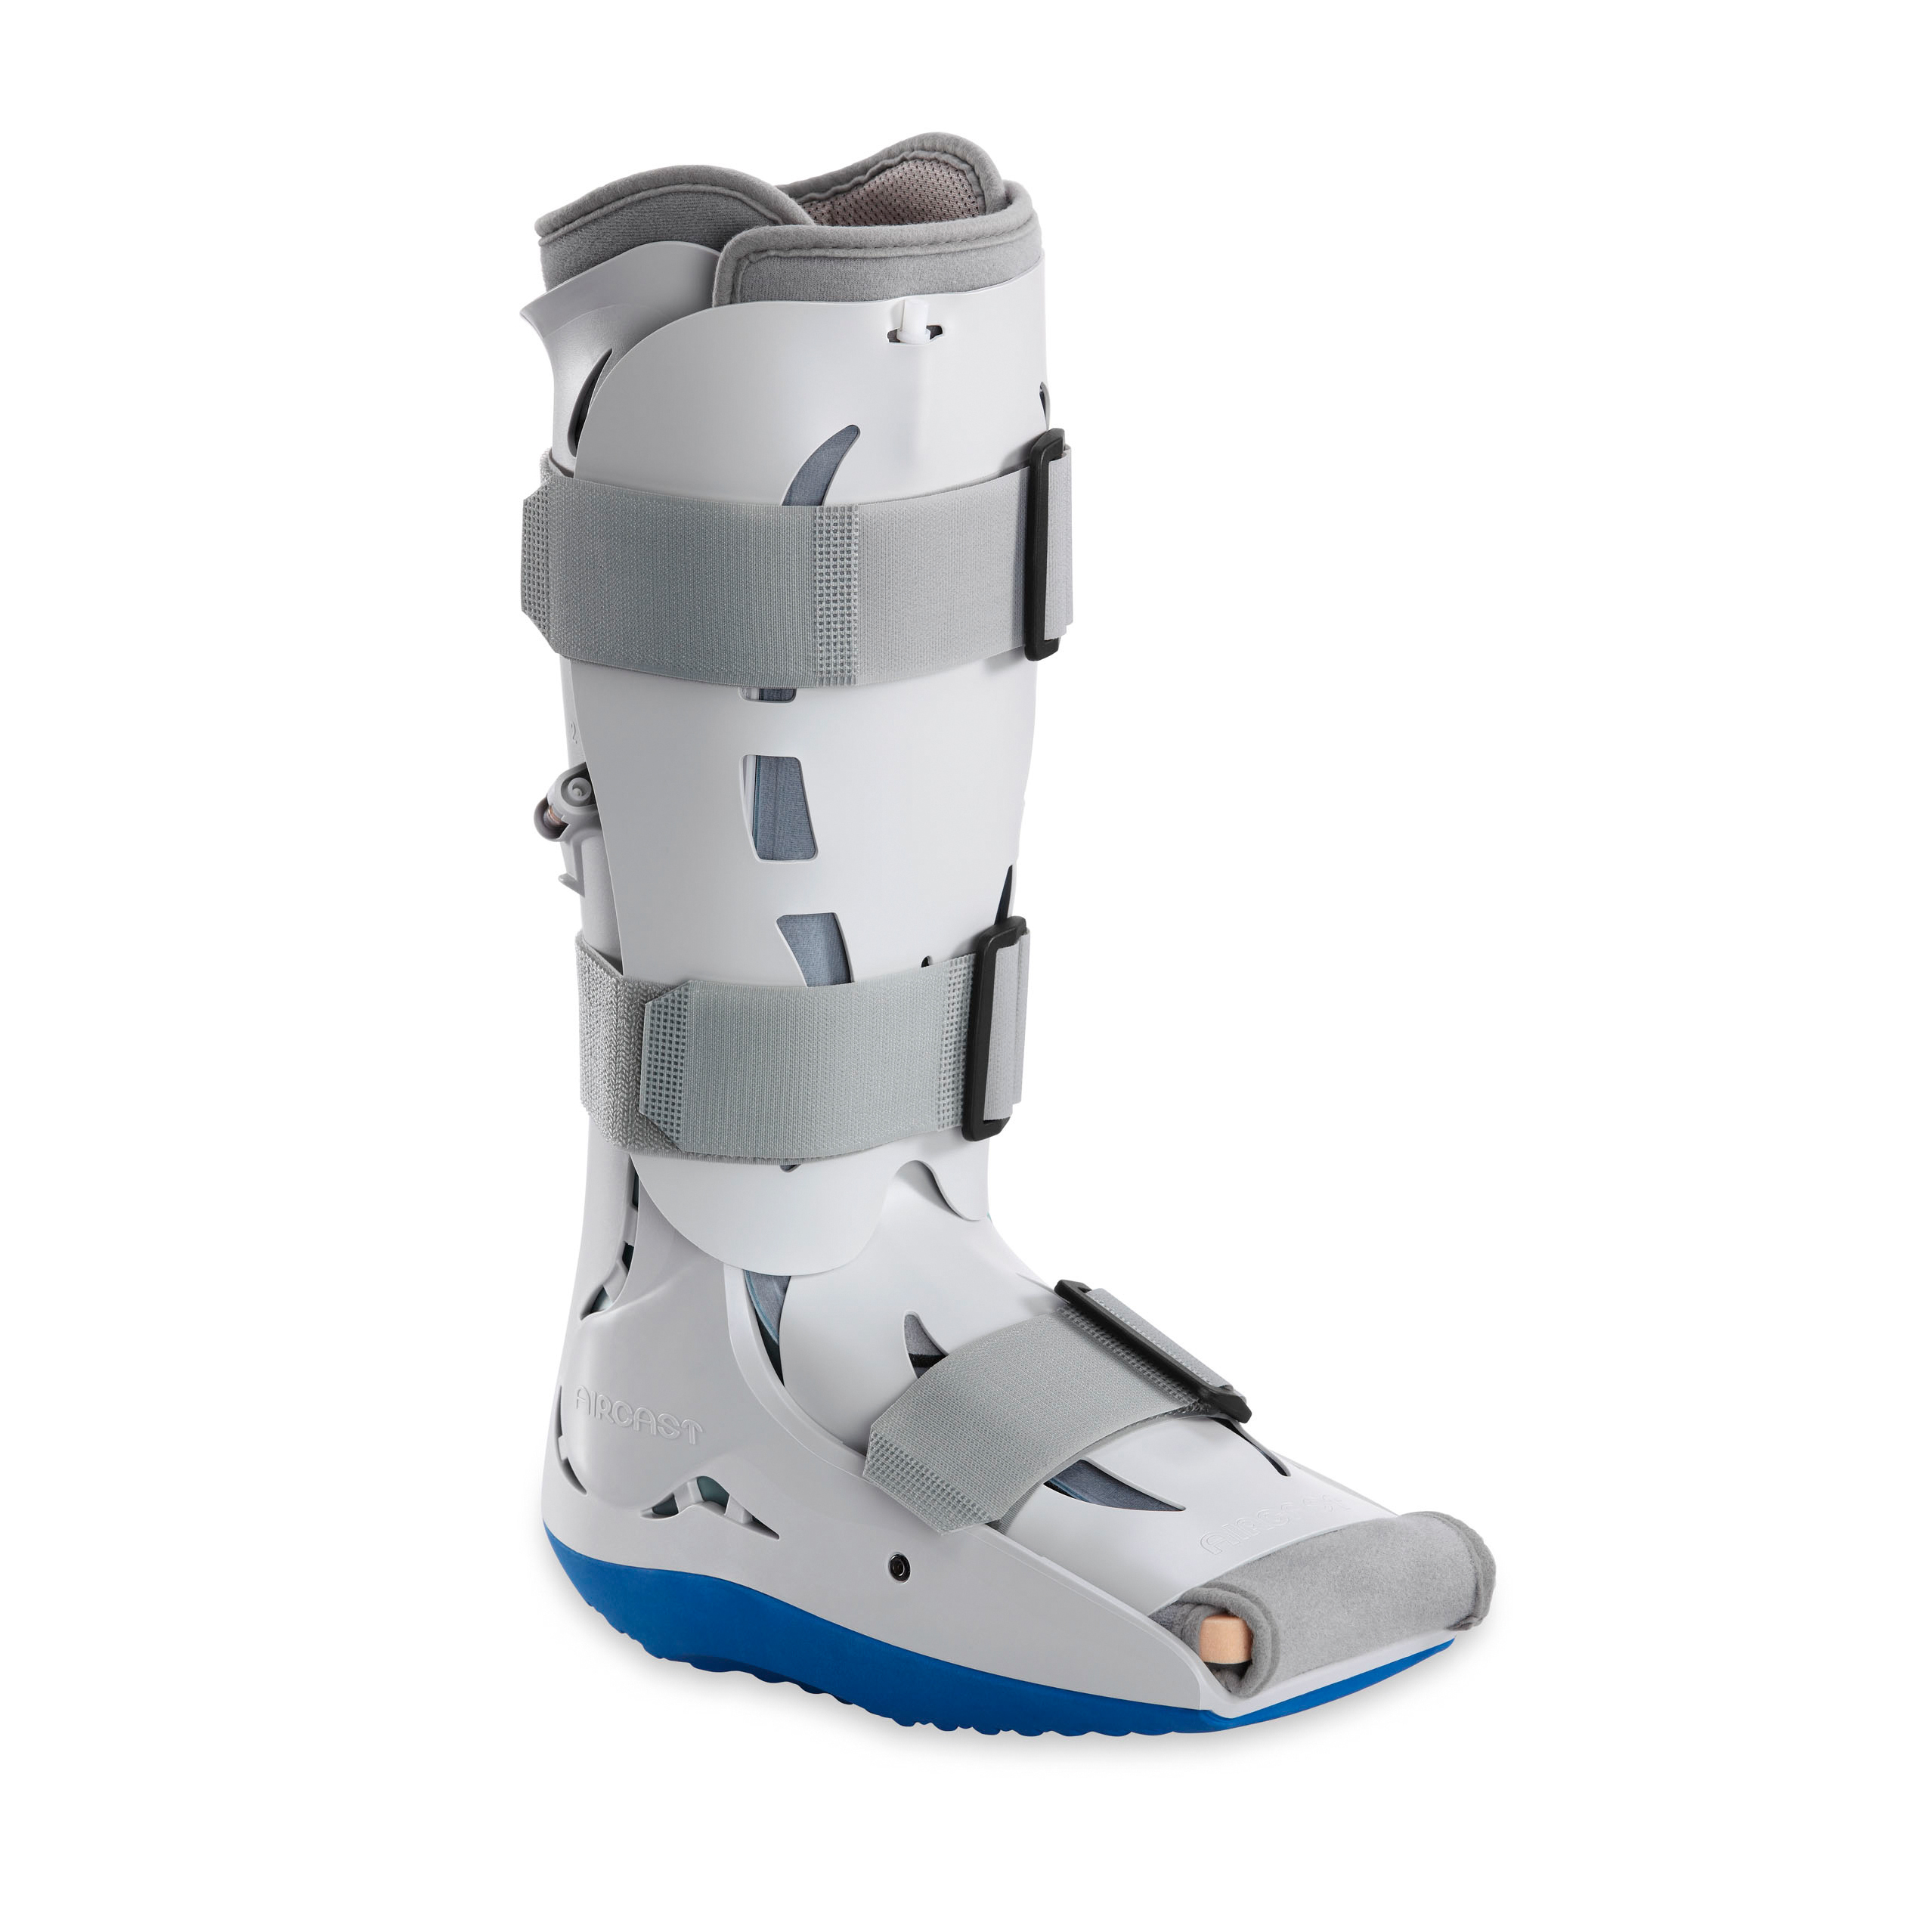 Produktbild AIRCAST® Diabetic Pneumatic Walker™, Unterschenkel-Fuß-Orthese zur Immobilisierung in vorgegebener
Position